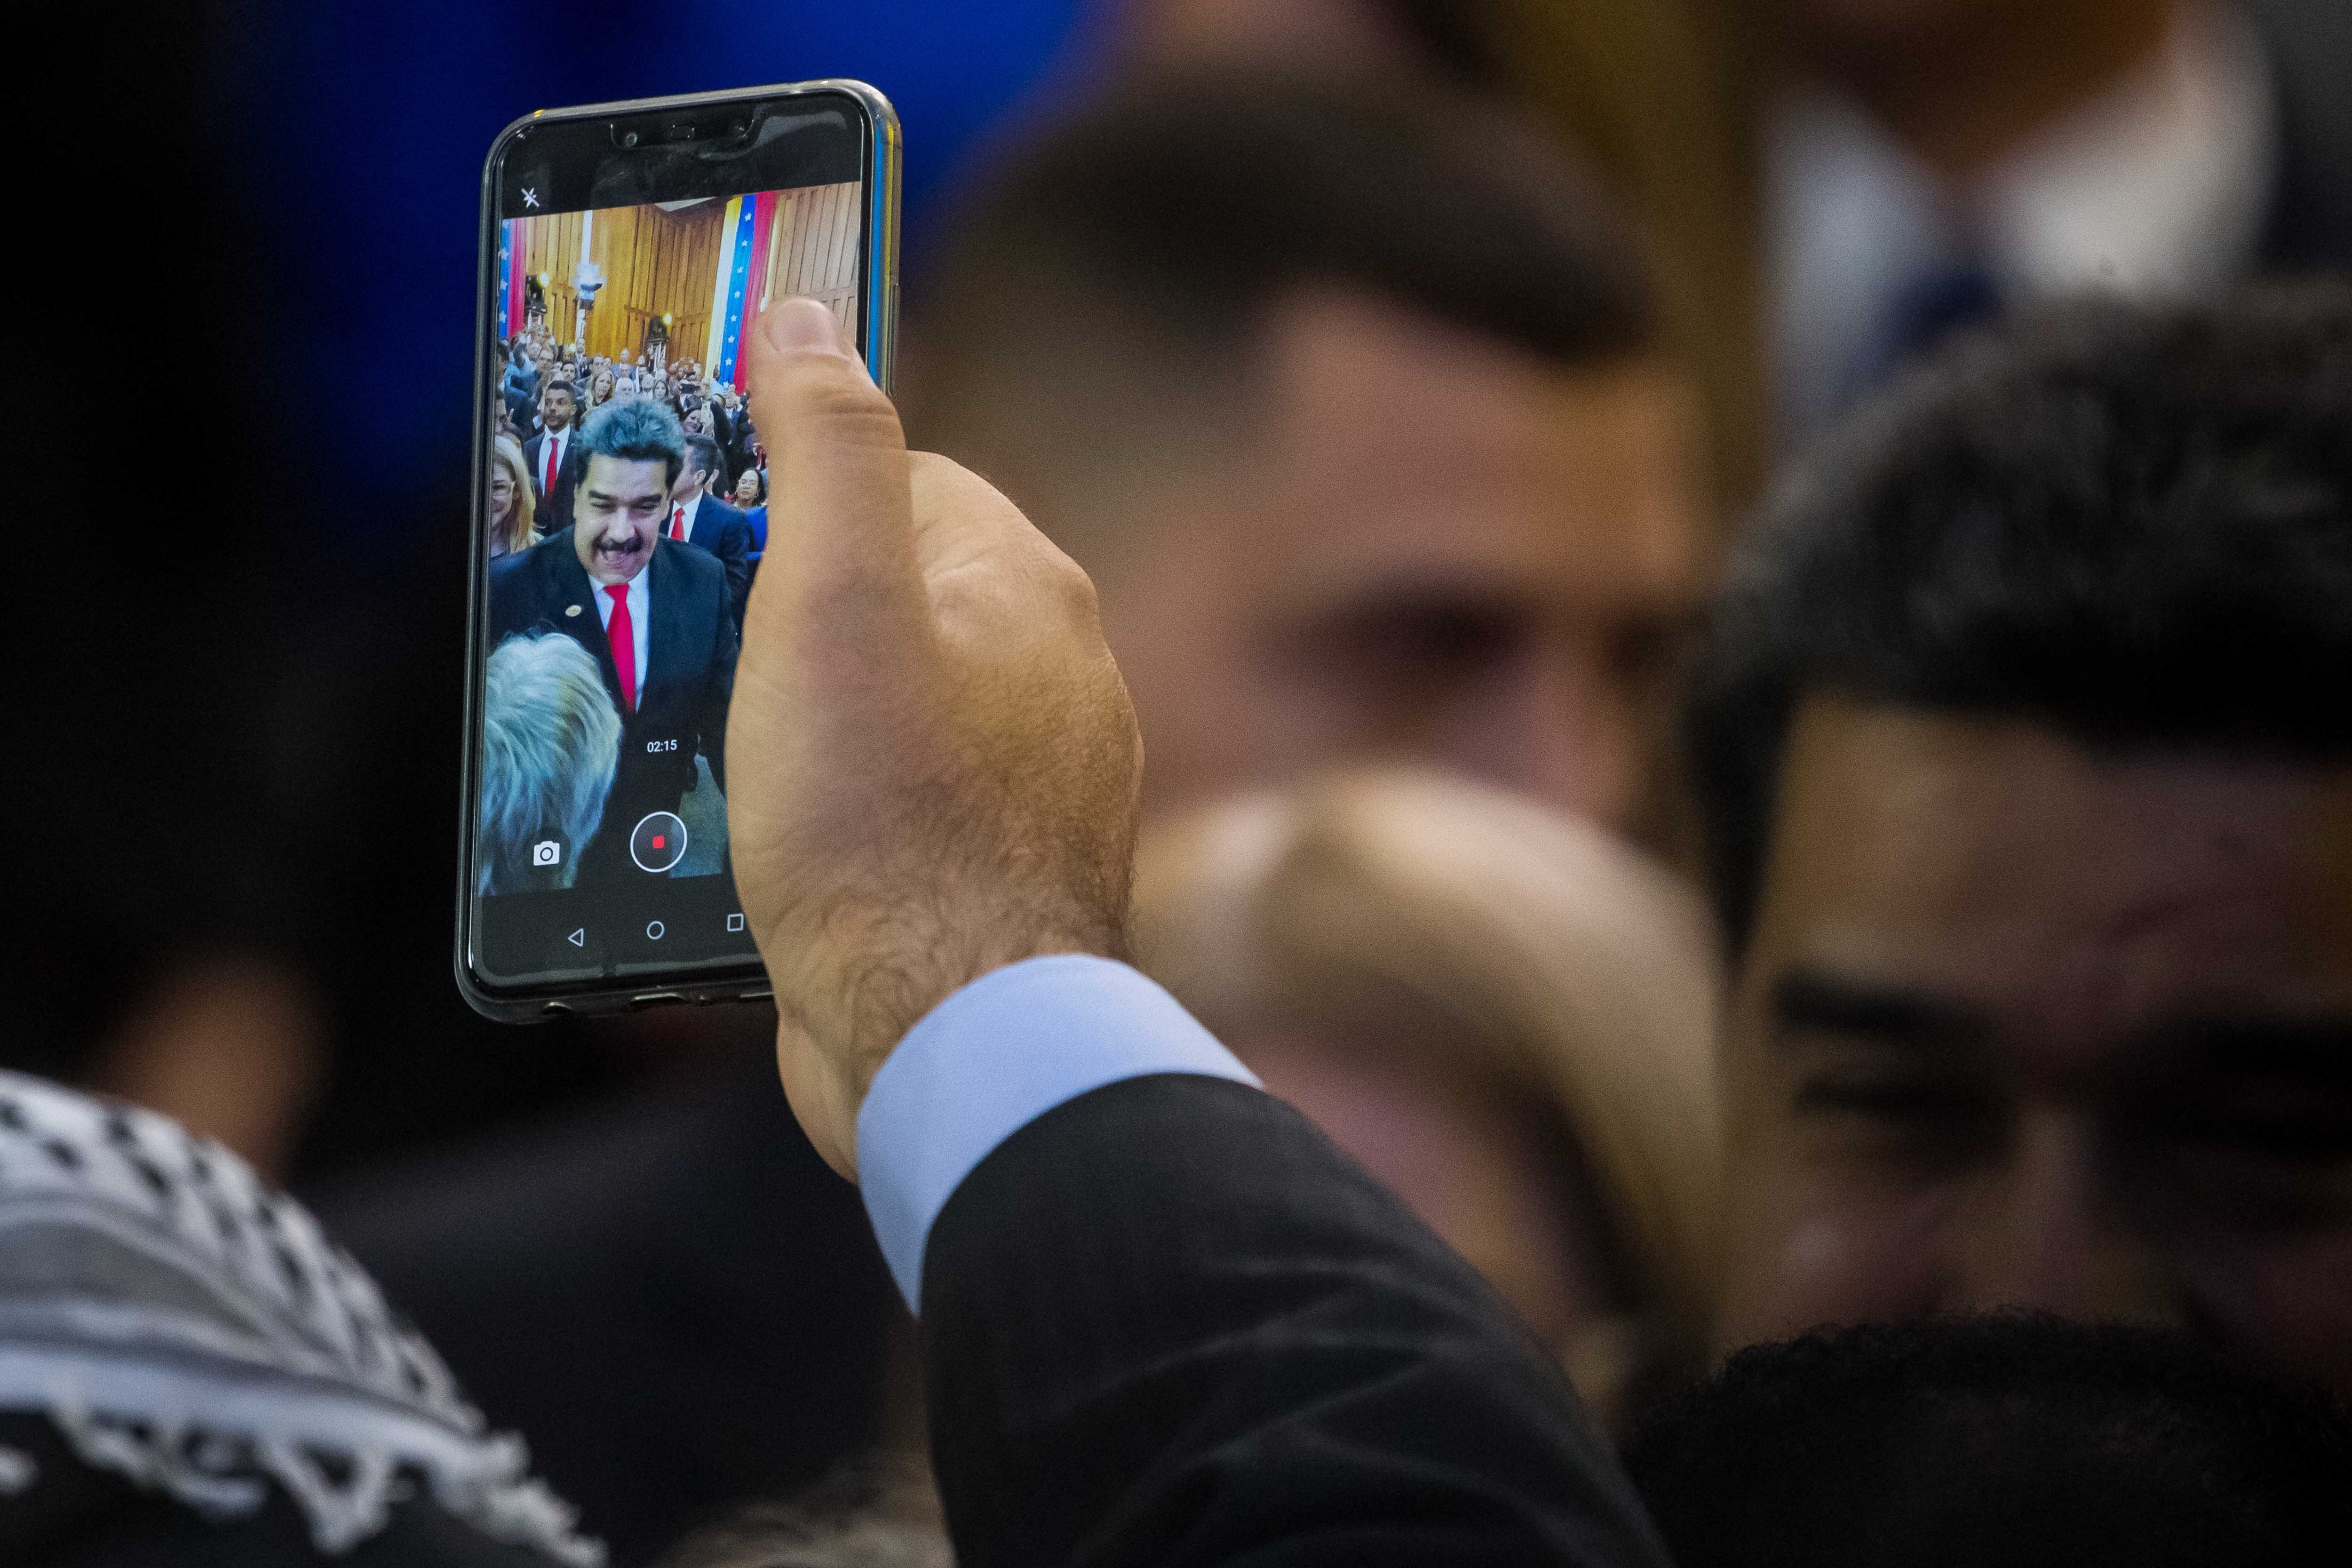 El plan de Maduro para vaciar sus cuentas de bots: campaña masiva para ganar seguidores reales